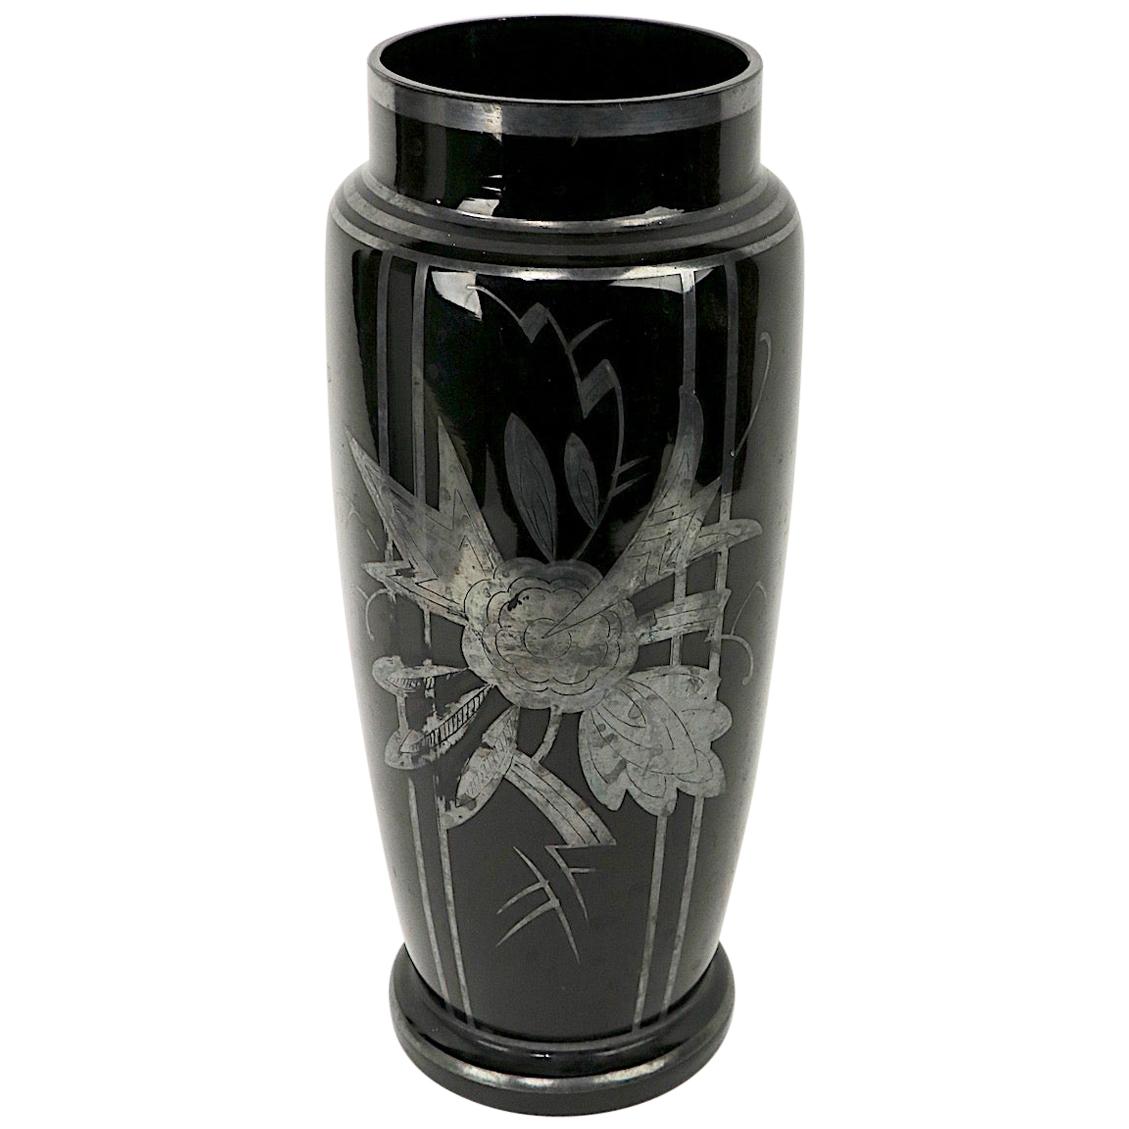 Czechoslovakian Art Glass Silver Deposit Vase in Black Glass